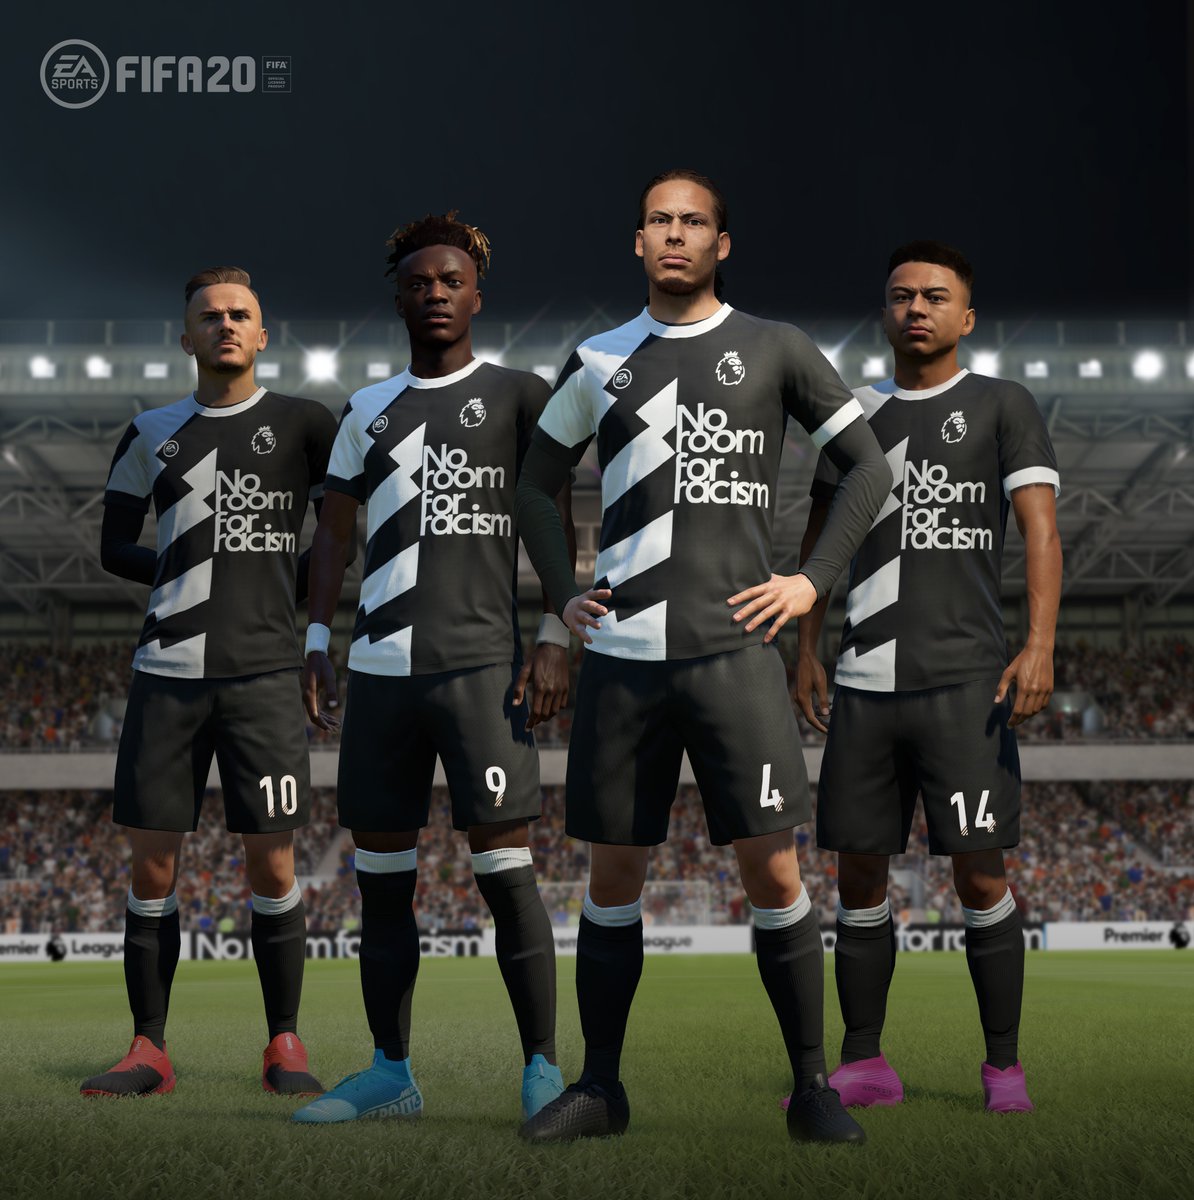 FIFA 20 участвует в информационной кампании Премьер-лиги «Нет места расизму»